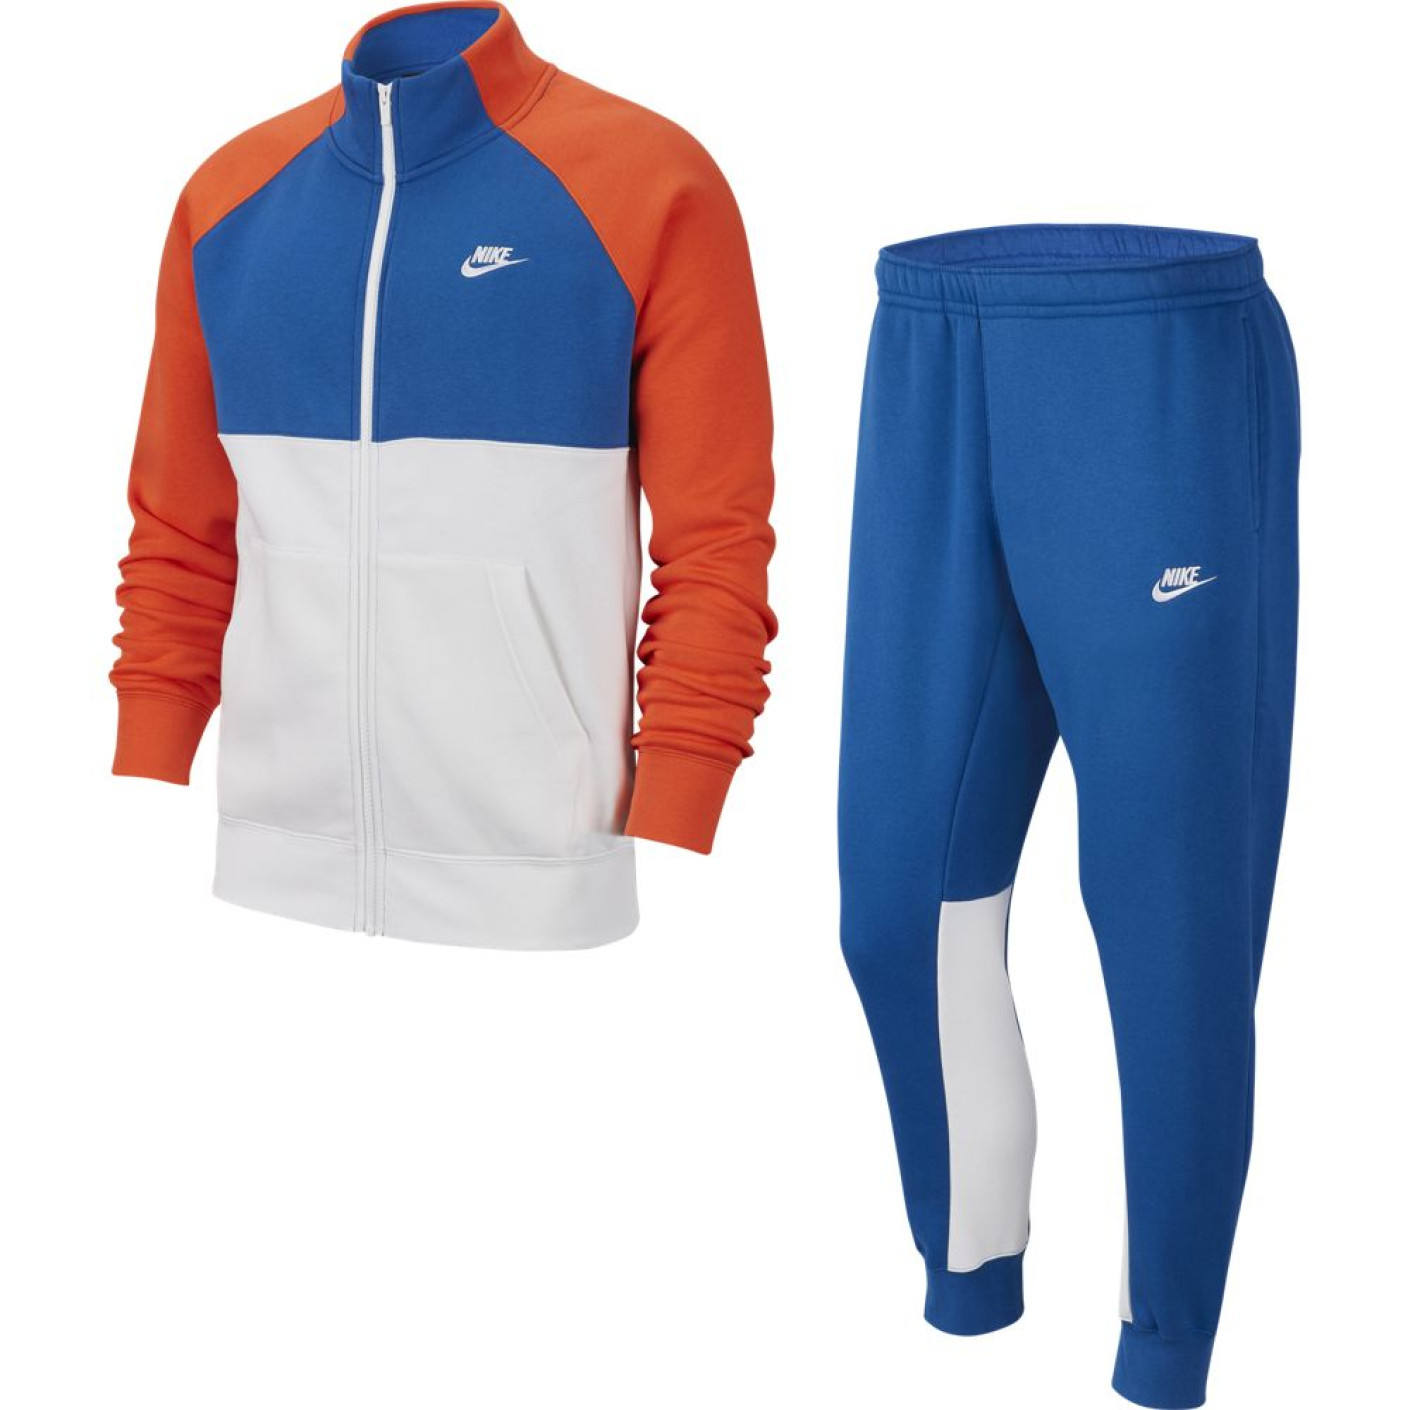 Nike NSW CE Trainingspak Fleece Blauw Wit Oranje